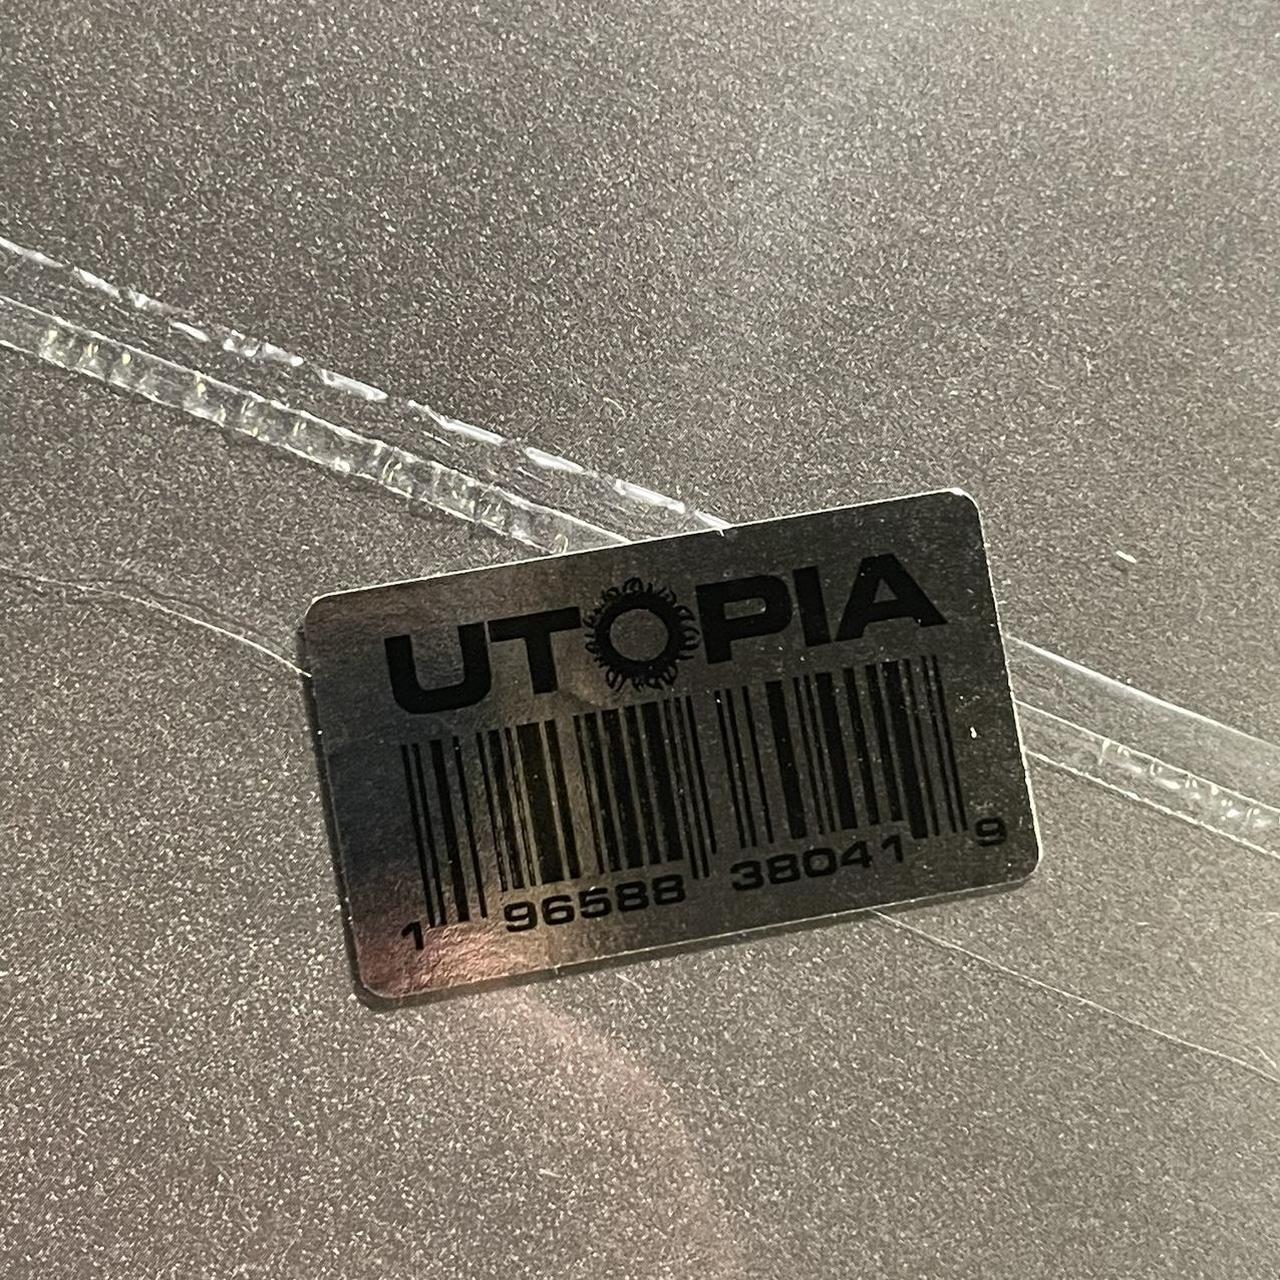 Utopia Travis Scott Vinyl 2 LP Brand New Exclusive - Depop